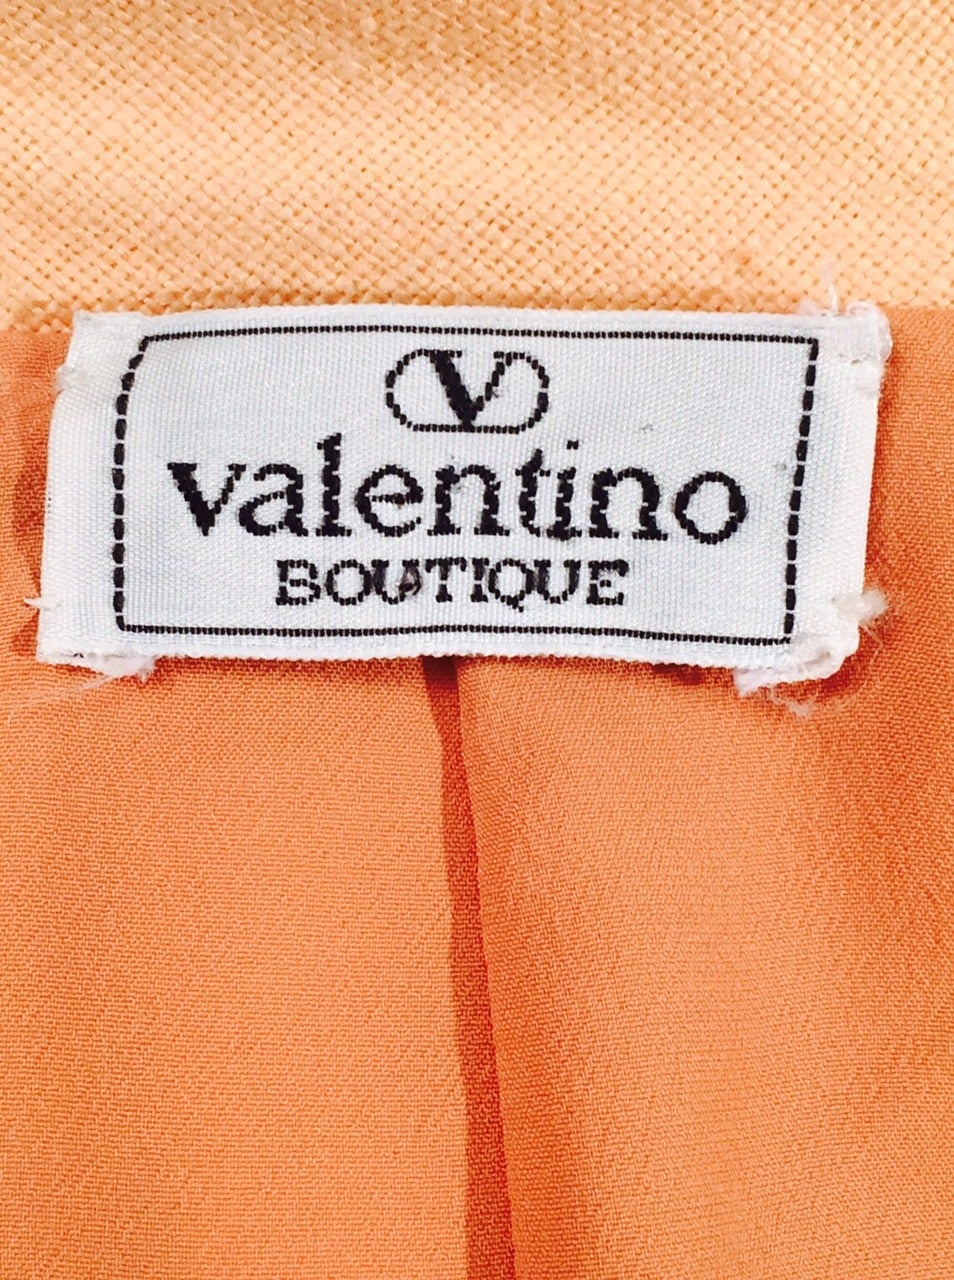 Valentino Boutique Peach Linen Skirt Suit For Sale 4